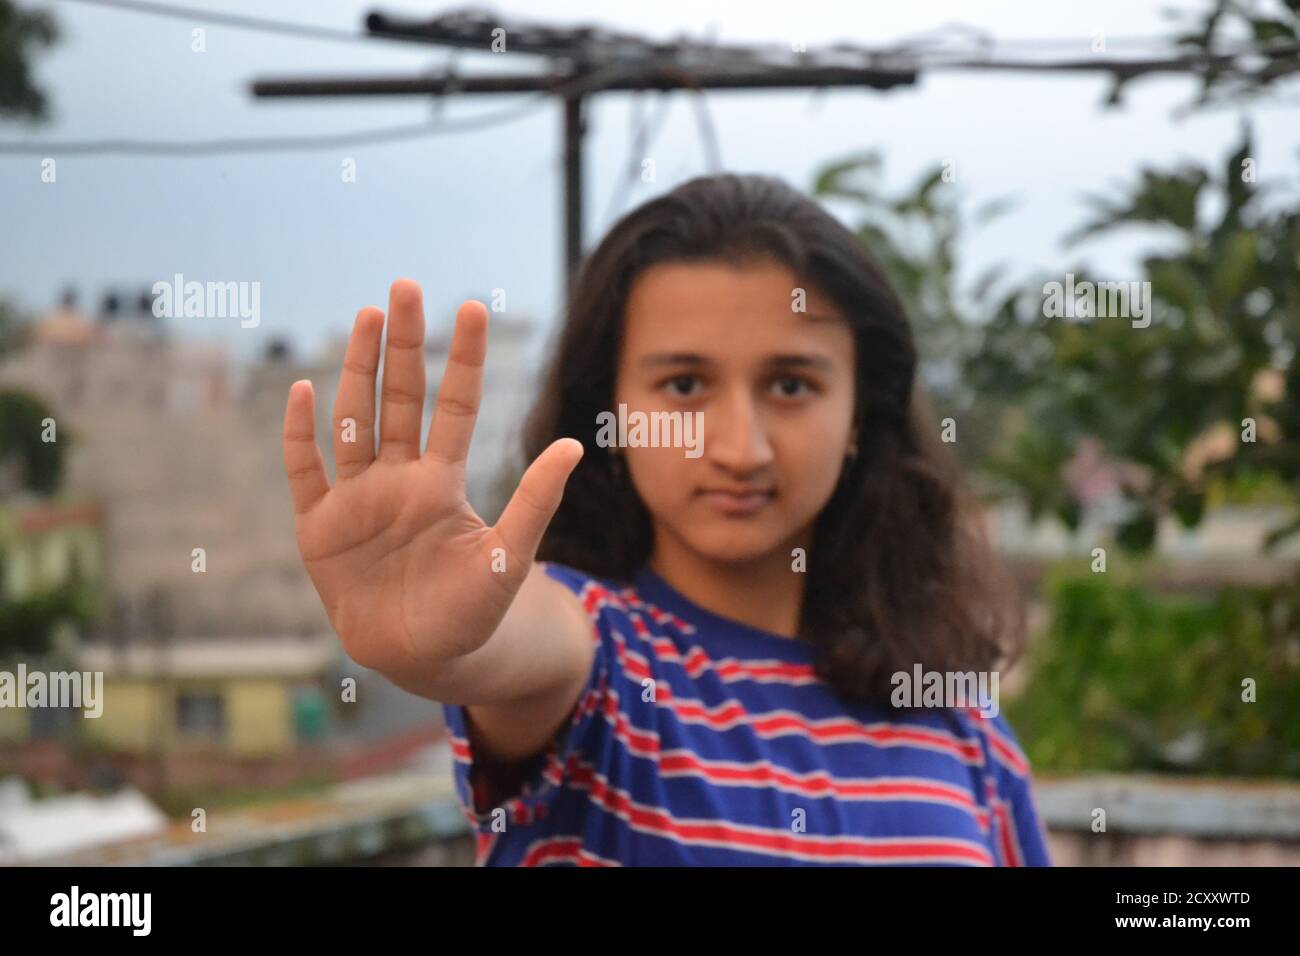 Una chica del sur de Asia muestra algunos gestos. Foto de stock